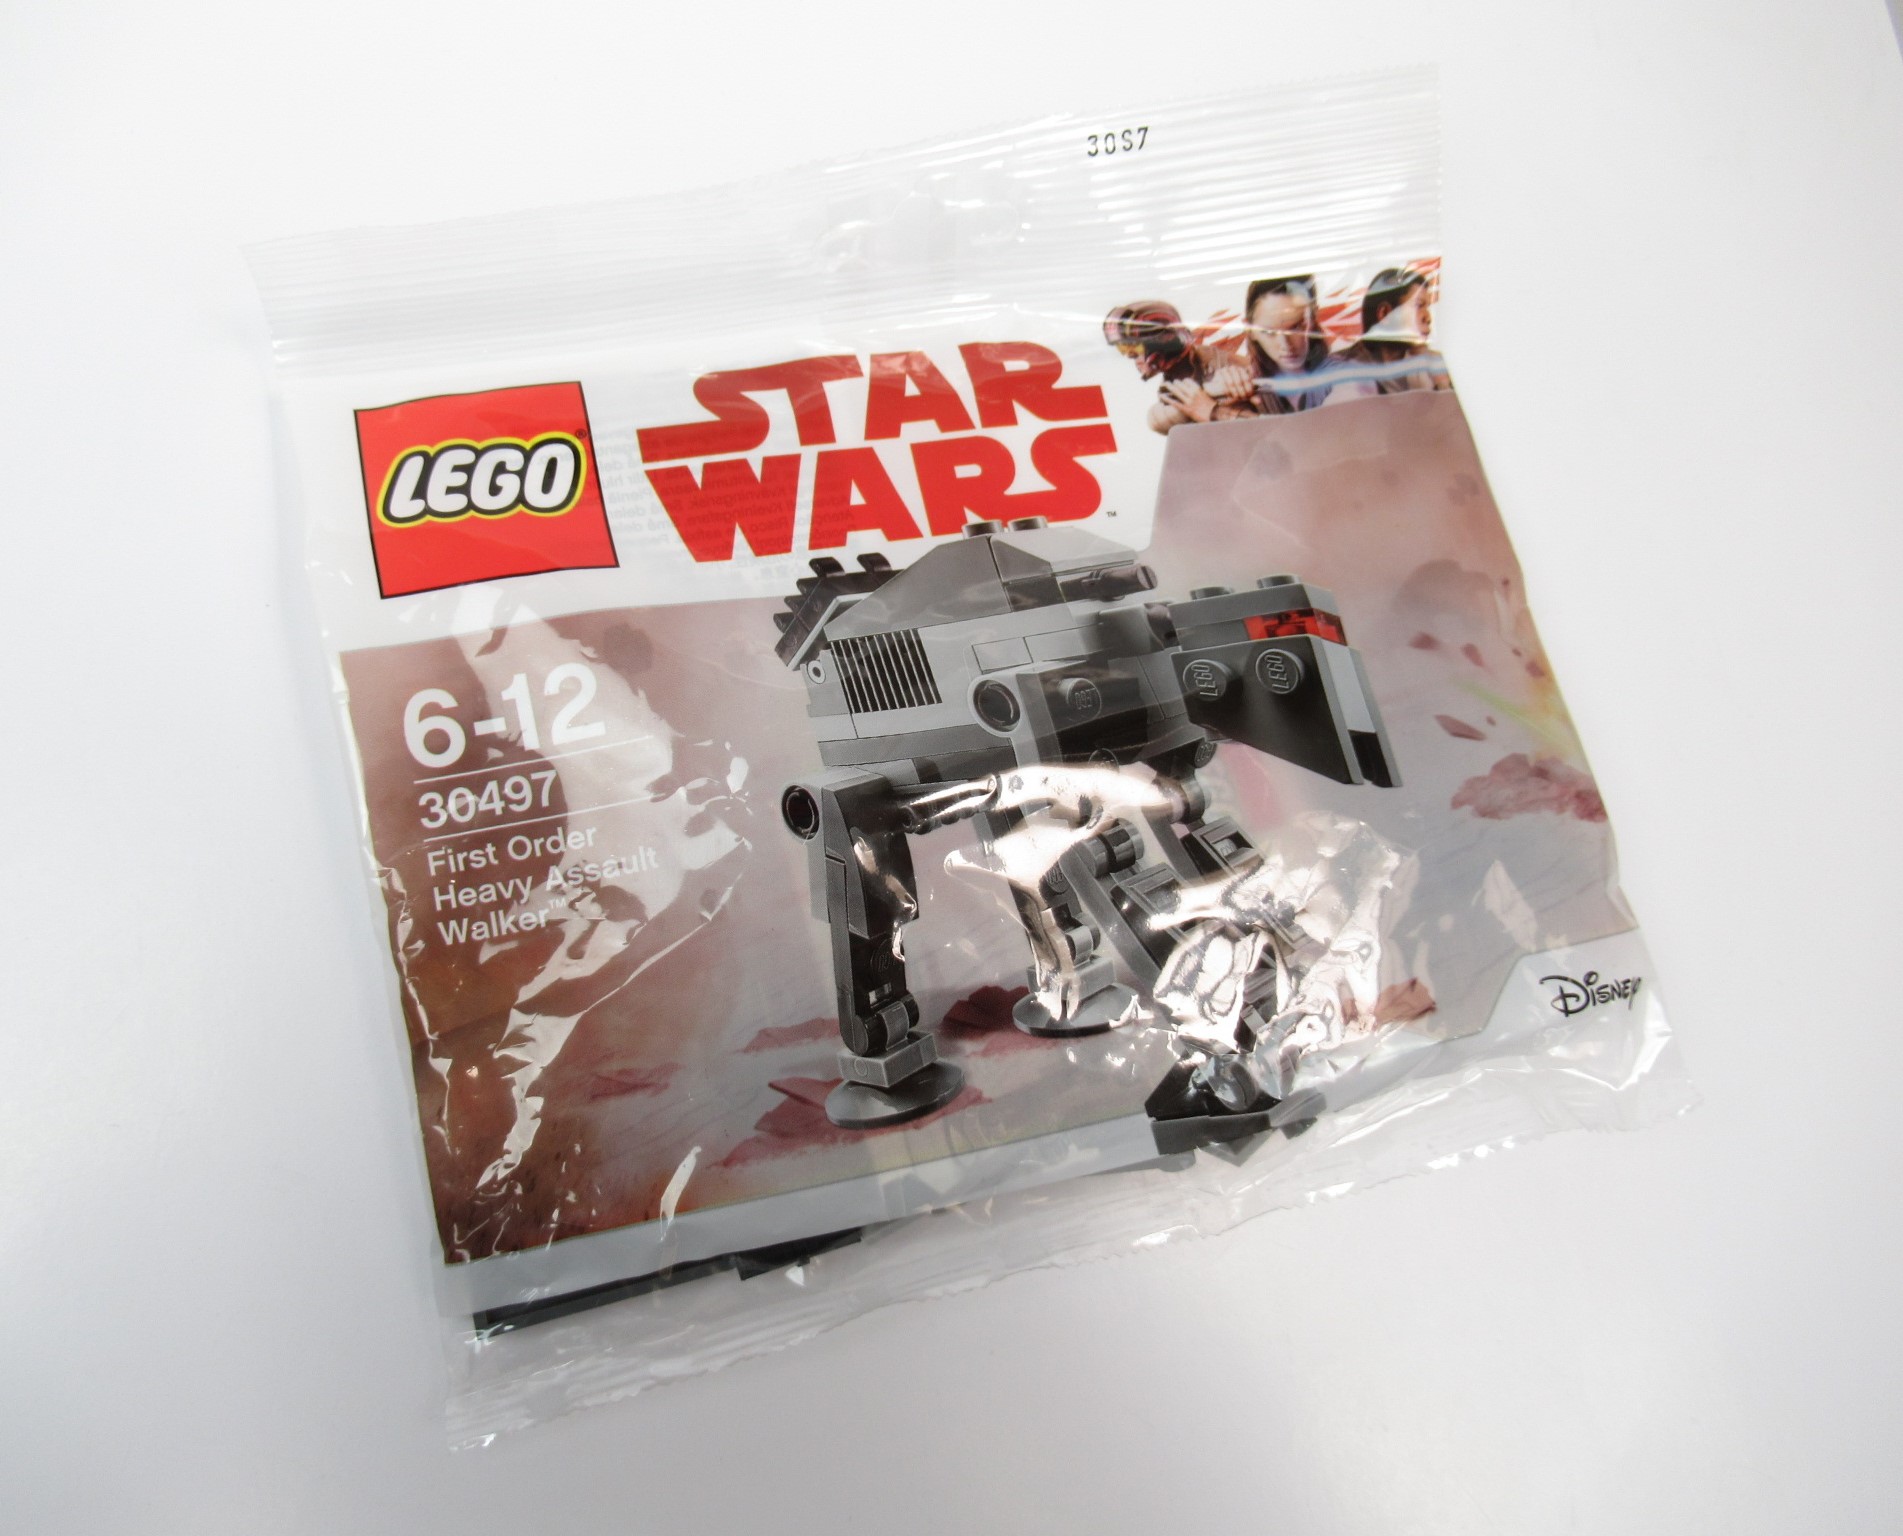 Kép a LEGO Star Wars 30497 First Order Heavy Assault Walker Polybag